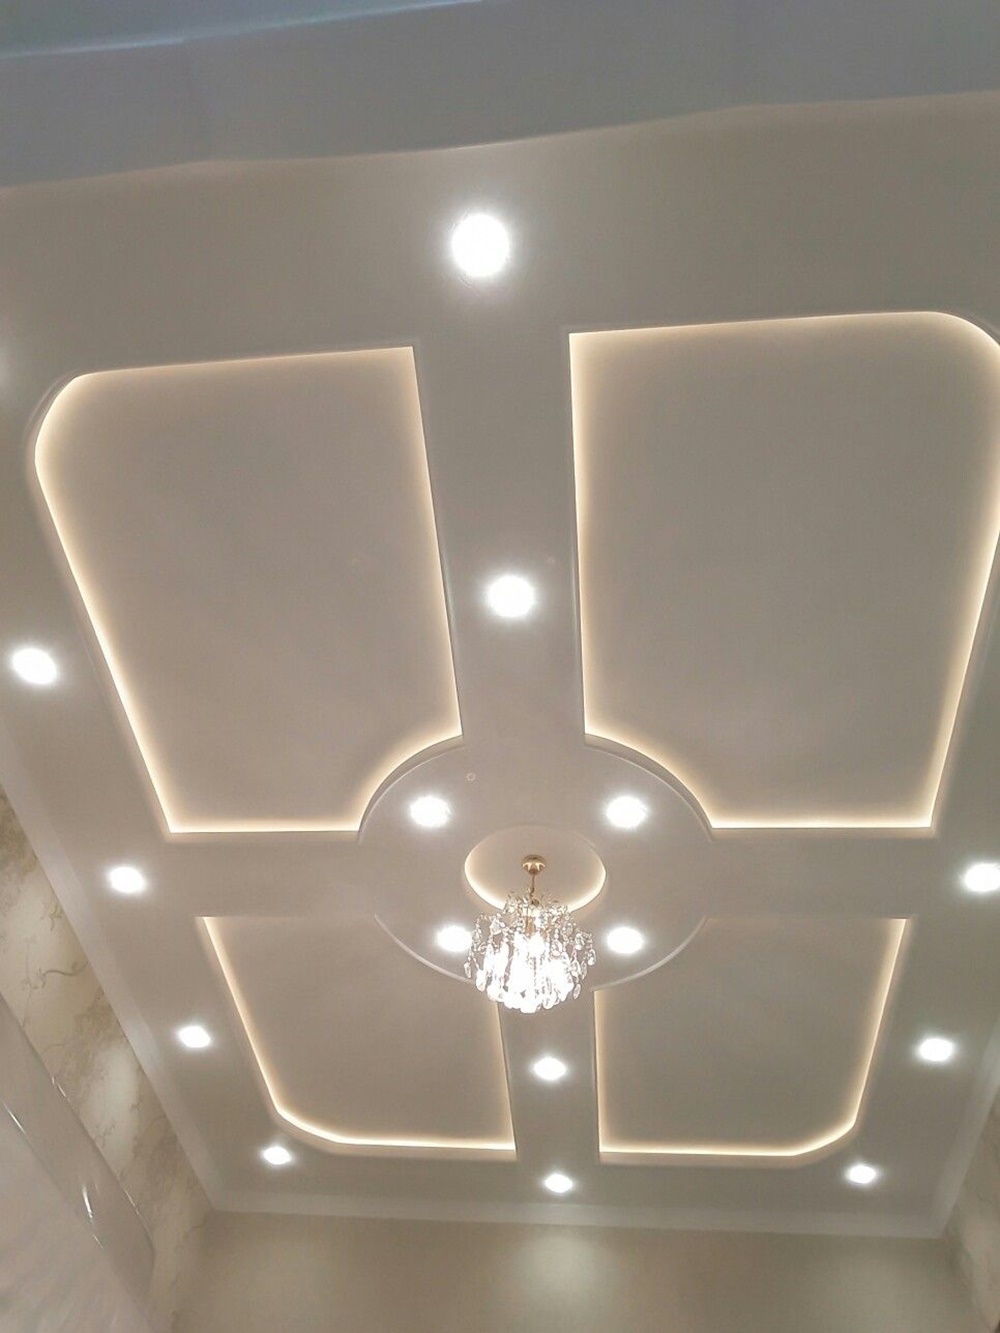 plaster-ceiling